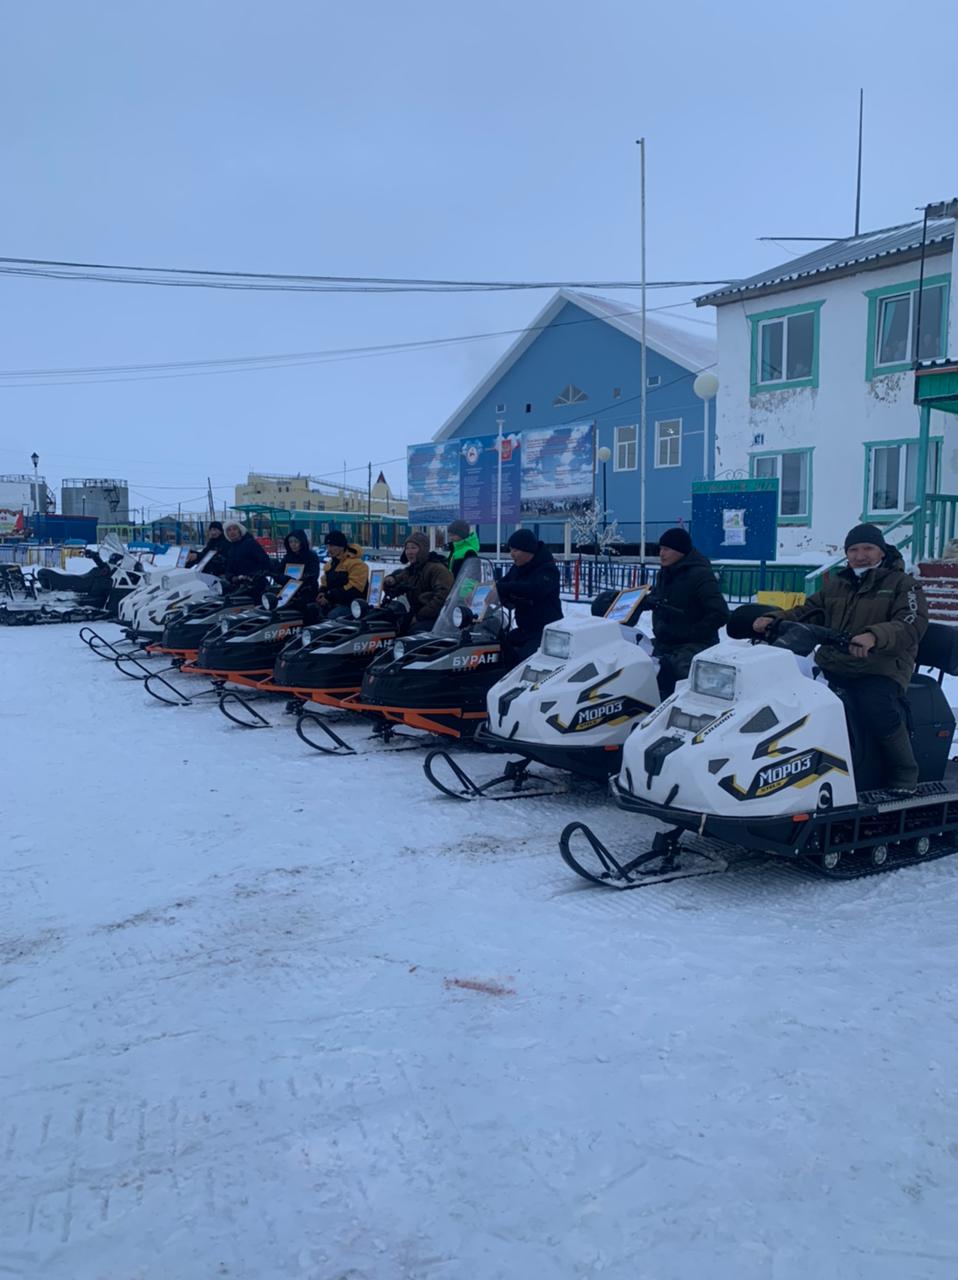 Оленеводы из Анабарского района Якутии получили 10 новых снегоходов